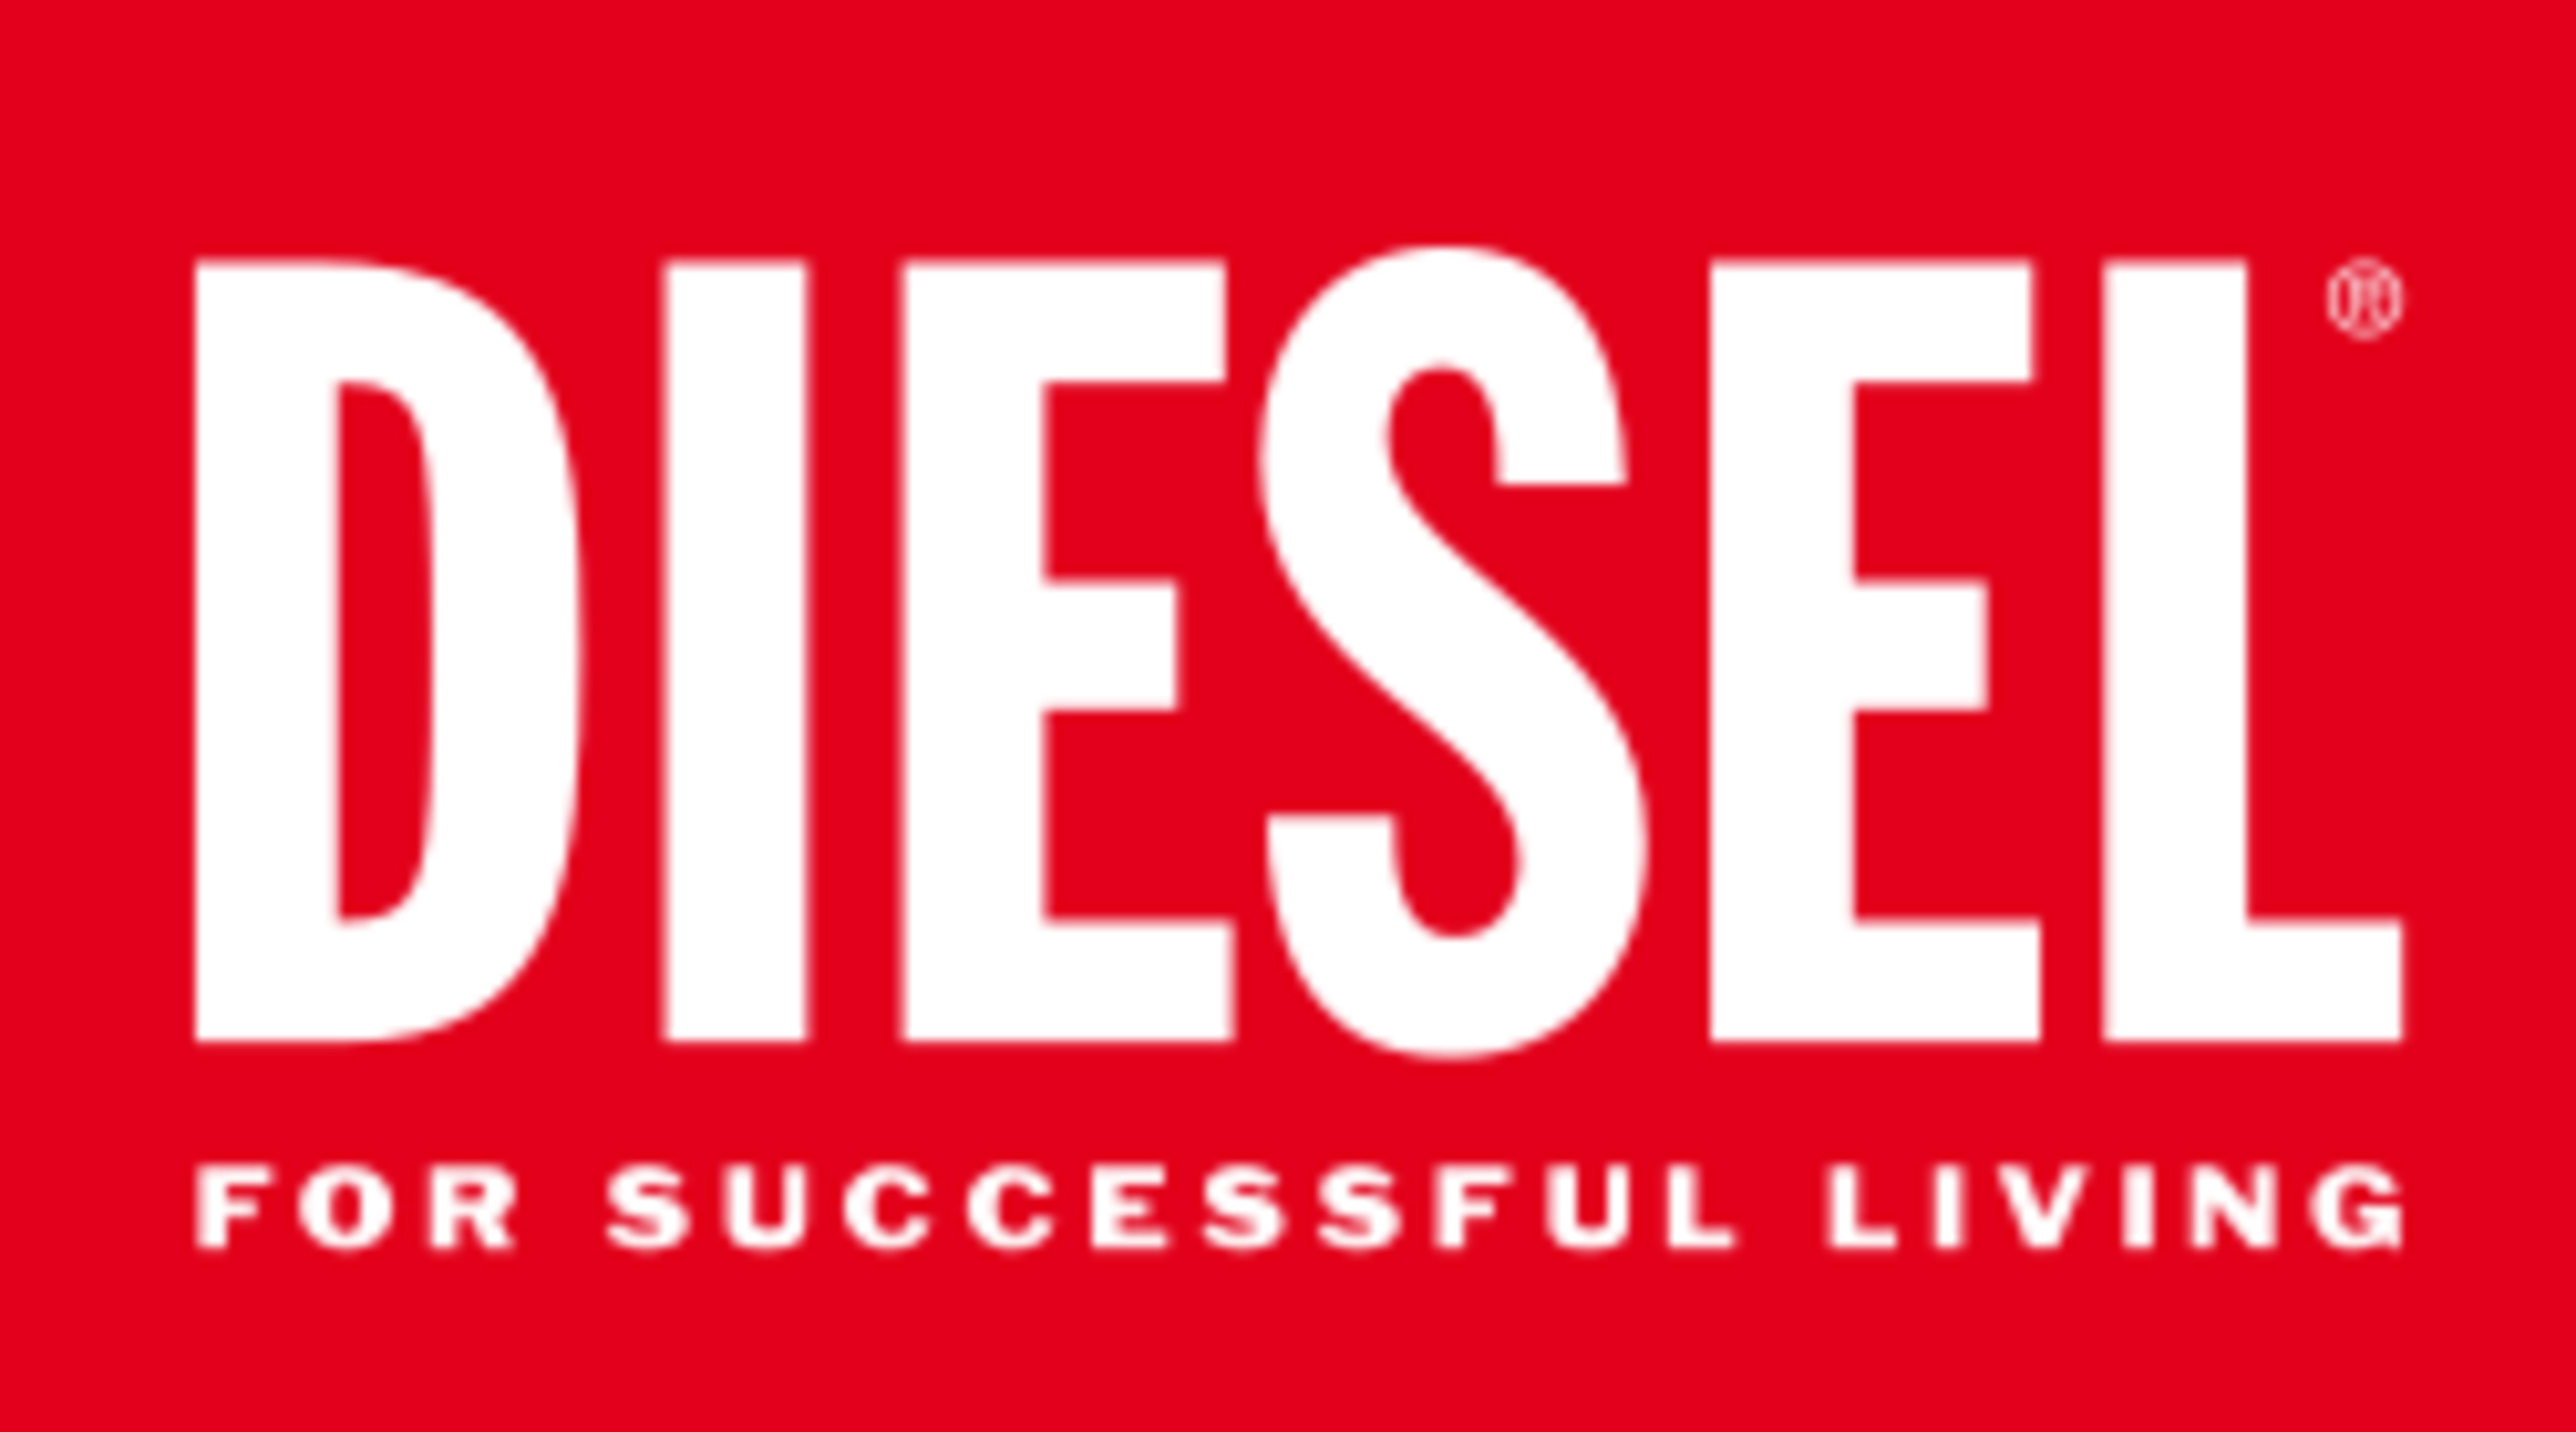 Diesel US